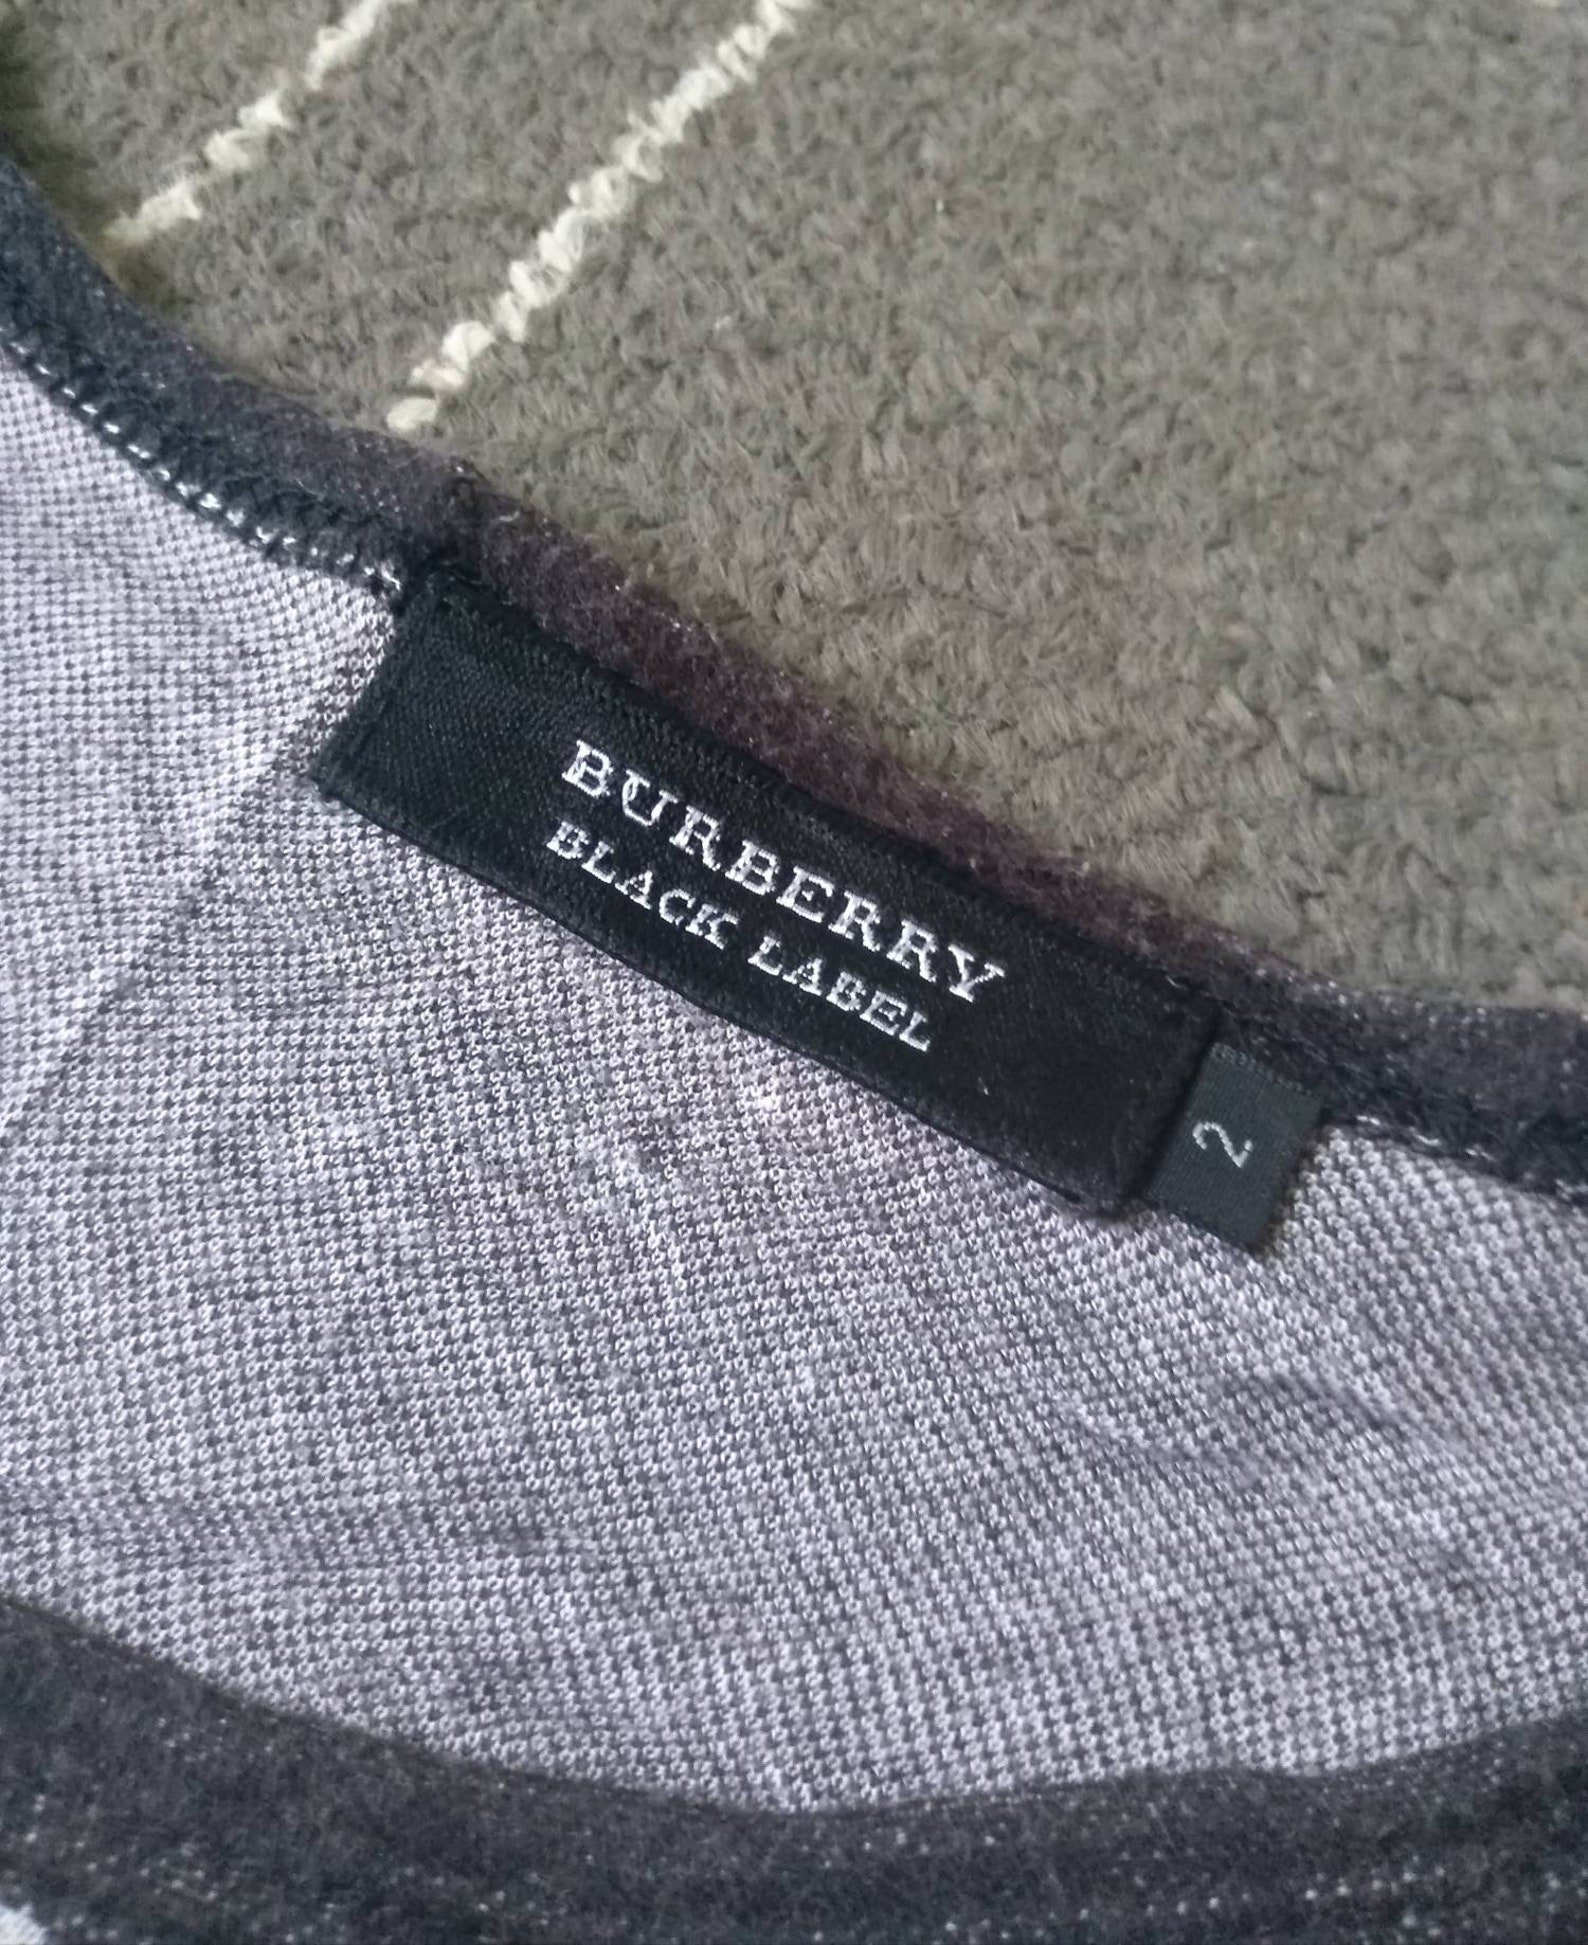 Burberry Black Label Tshirt Checked | Etsy